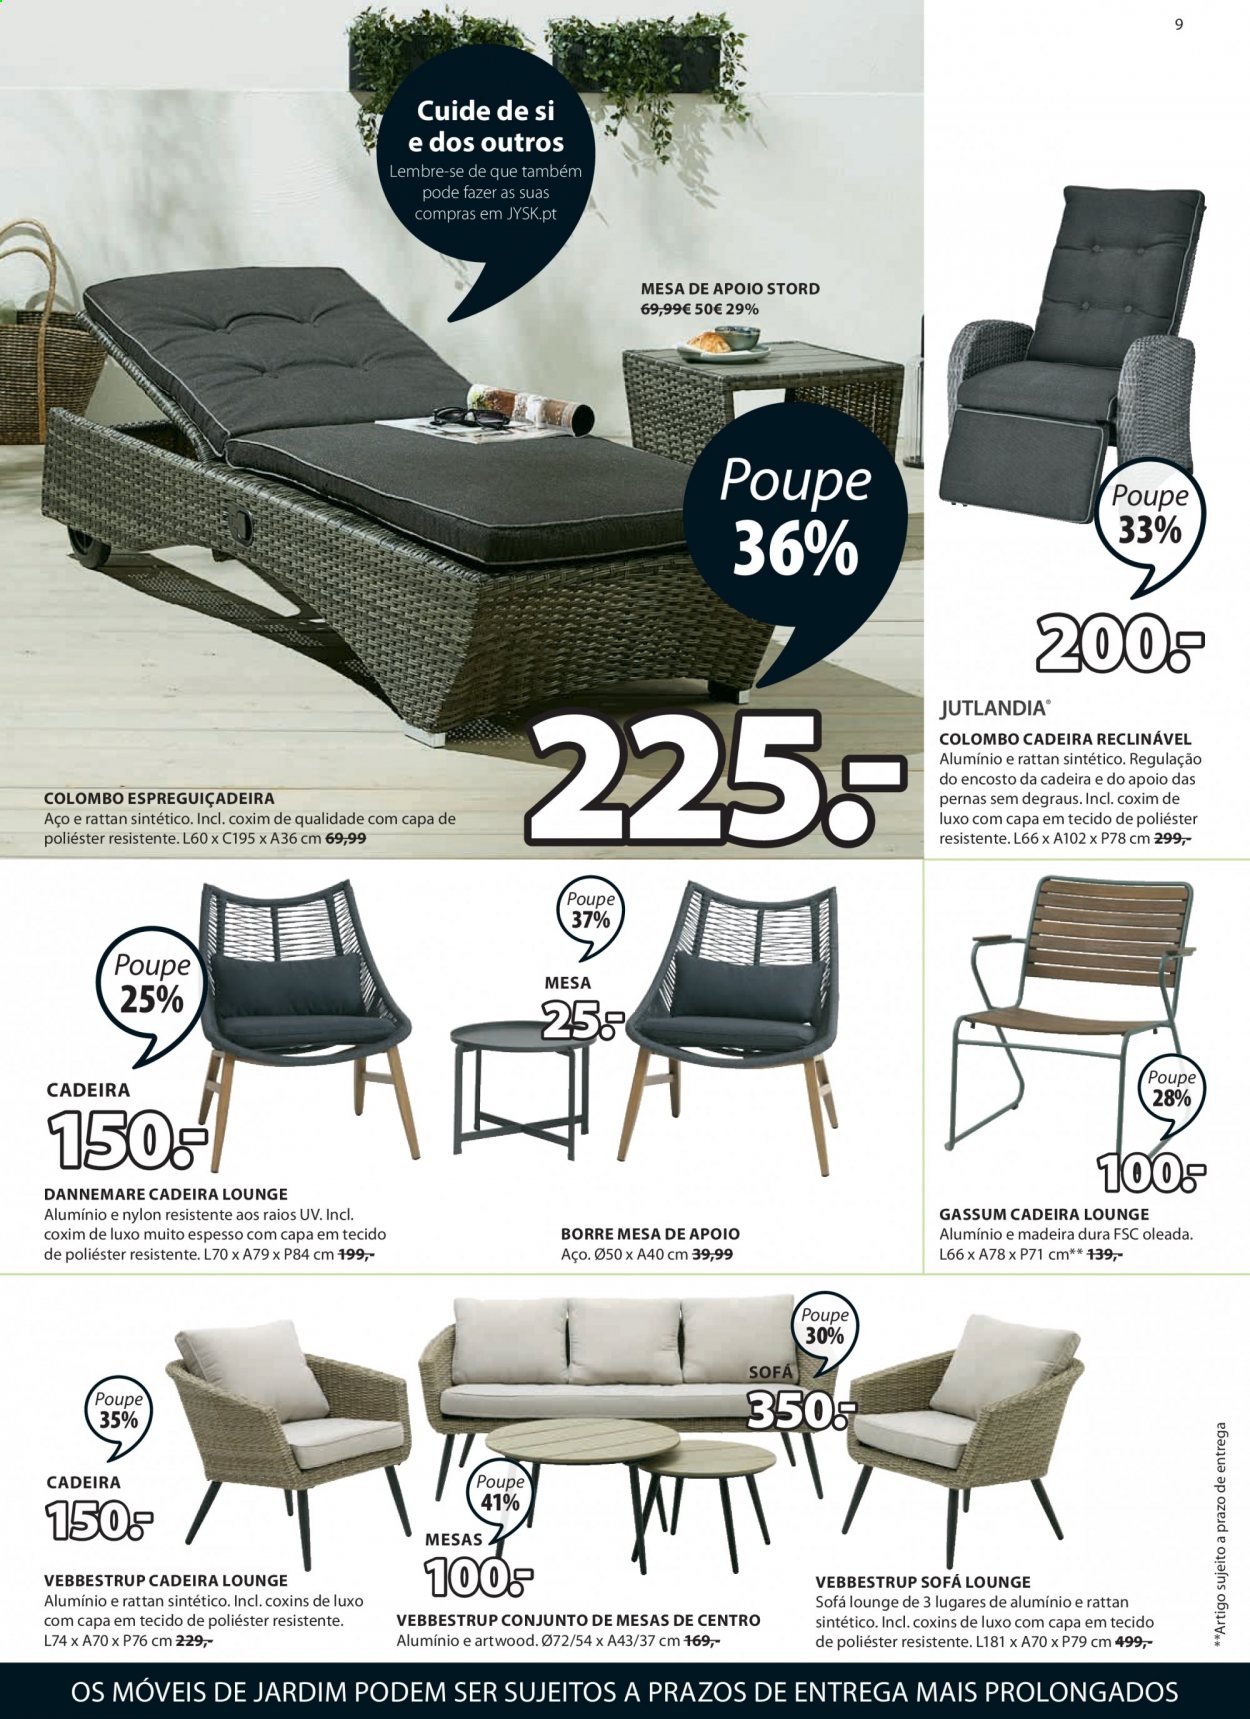 thumbnail - Folheto Jysk - 10.6.2021 - 23.6.2021 - Produtos em promoção - cadeira, sofá. Página 9.